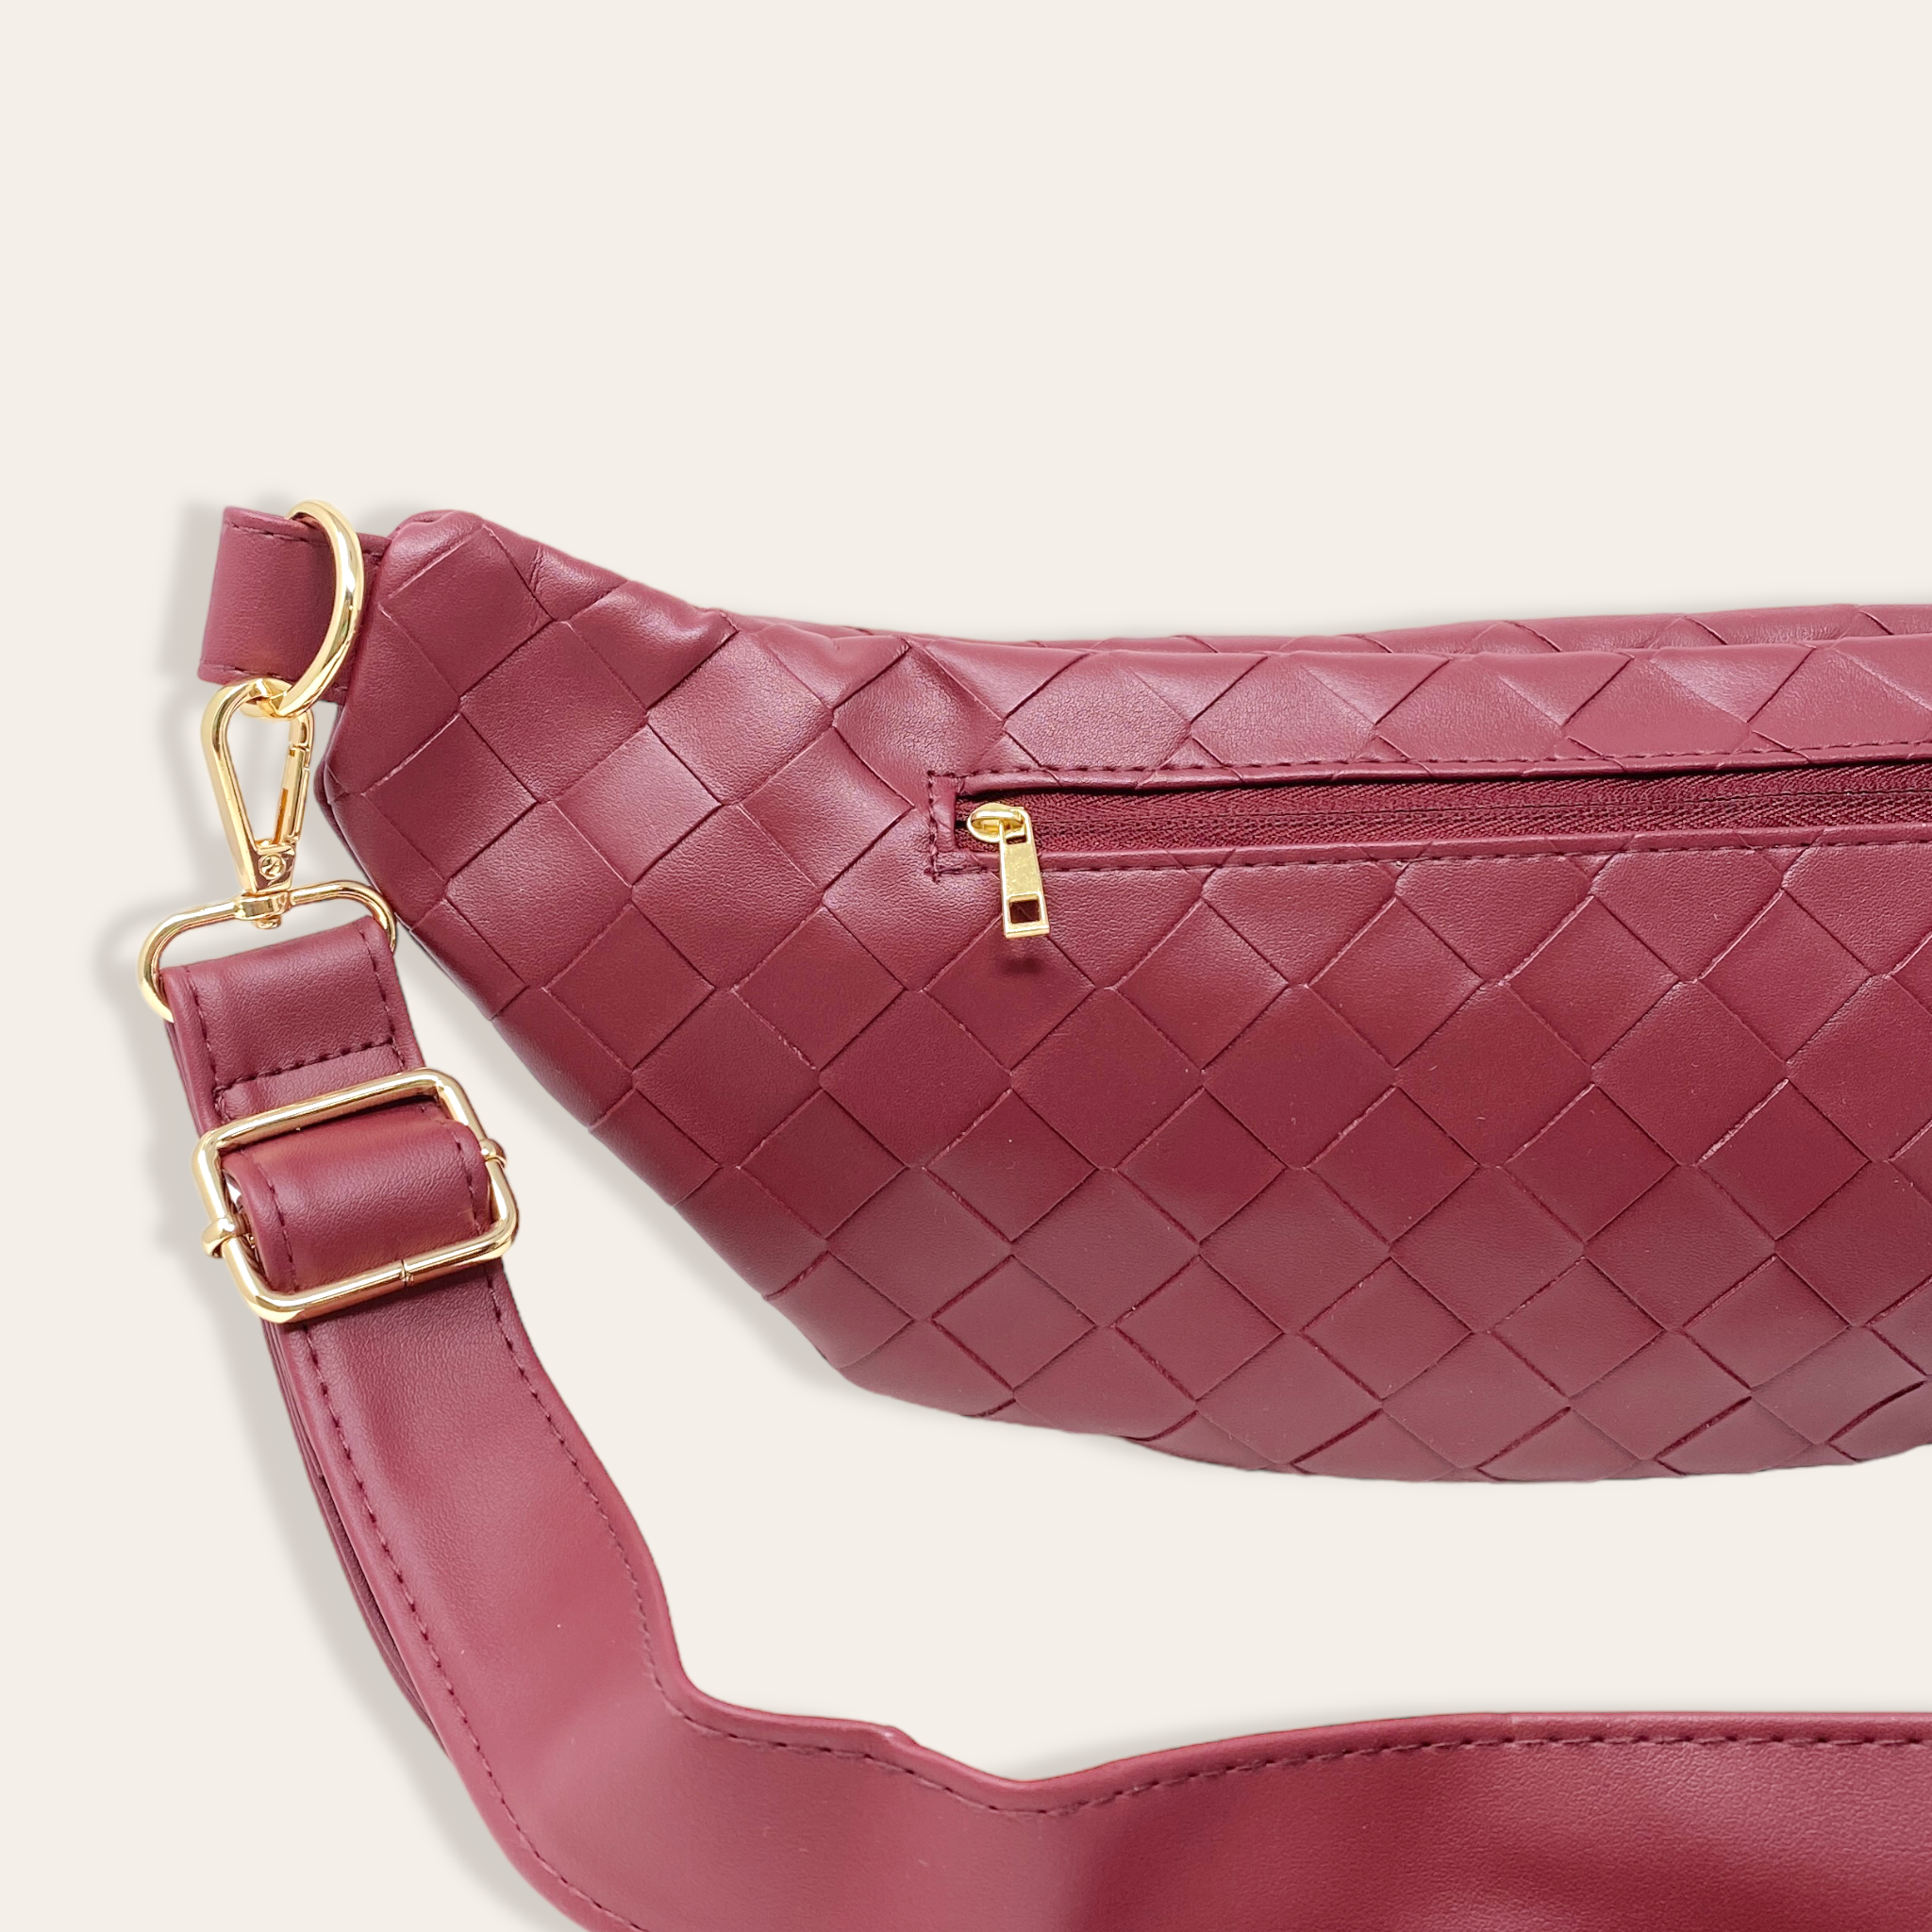 Trendy Luxe Belt Bag - Plum